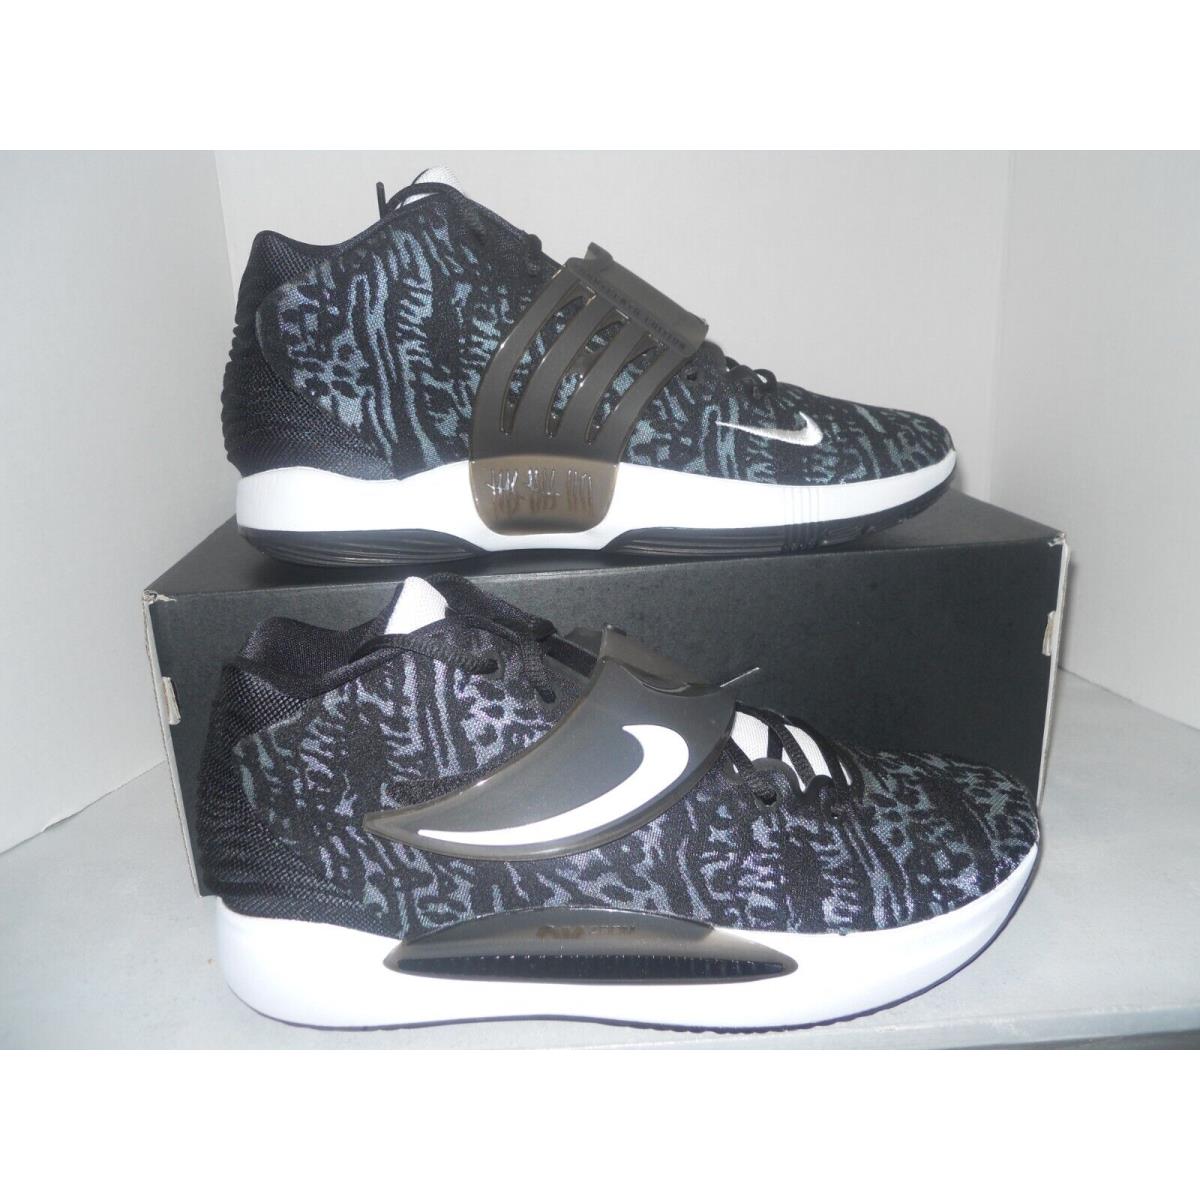 Nike shoes PROMO - Black 0